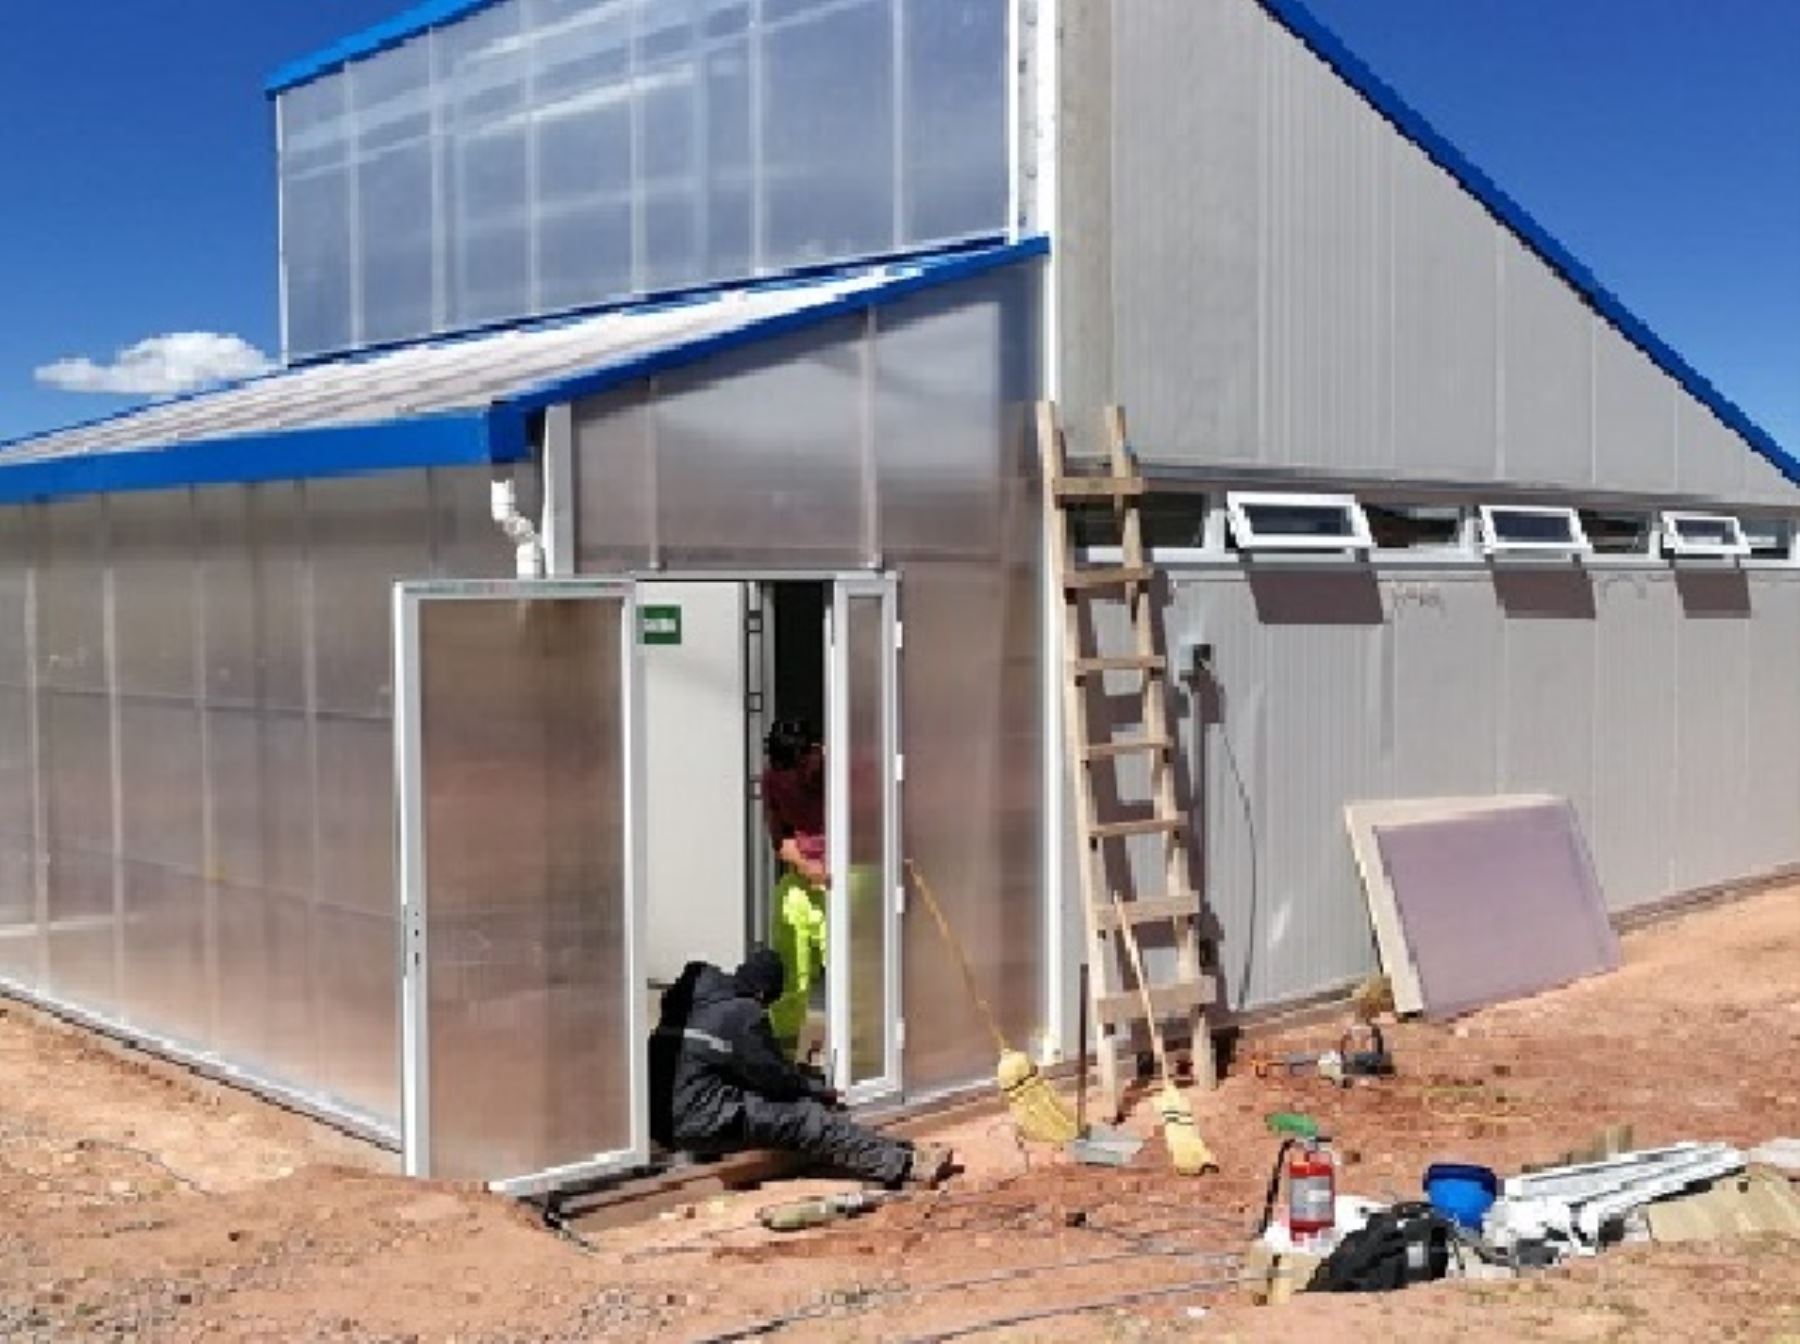 Las nuevas aulas modulares del Pronied están acondicionadas para enfrentar las bajas temperaturas que se registran en las zonas altoandinas. ANDINA/Difusión